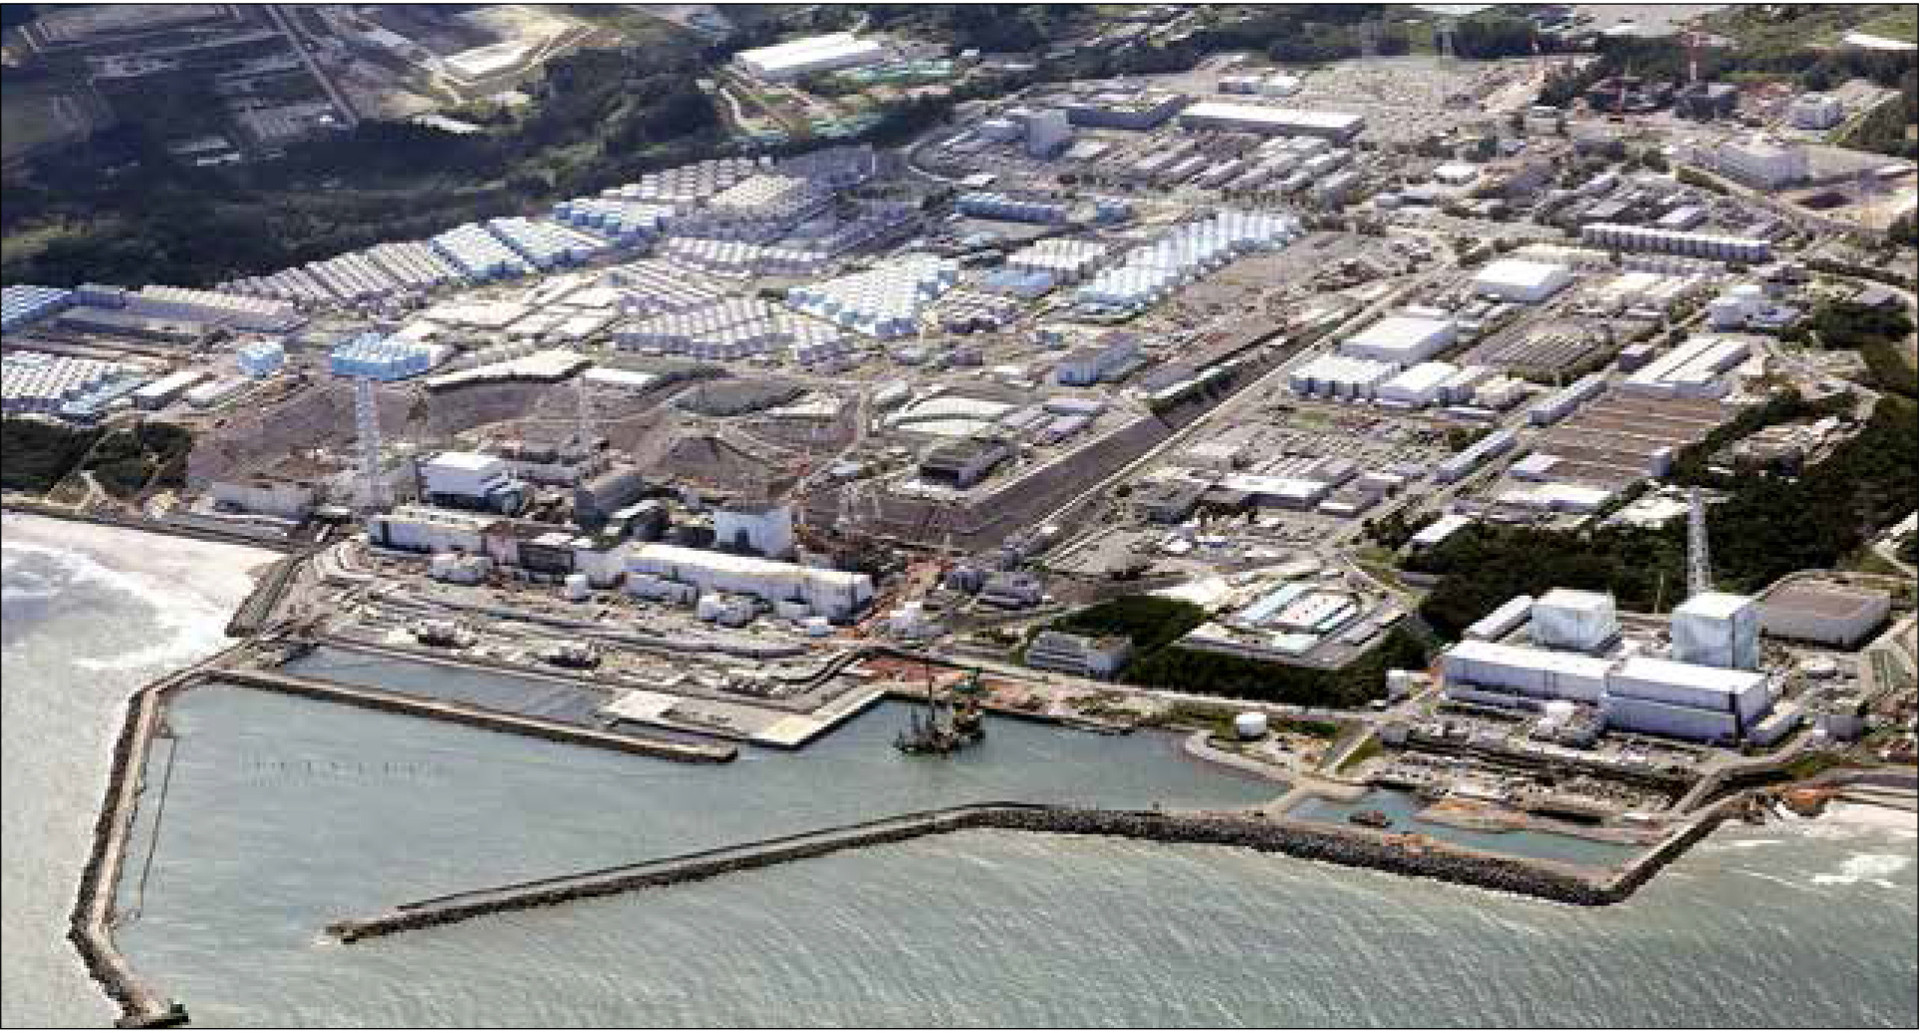 Không ảnh Nhà máy điện hạt nhân Fukushima ở Nhật Bản ngày 24-8 - Ảnh: Reuters